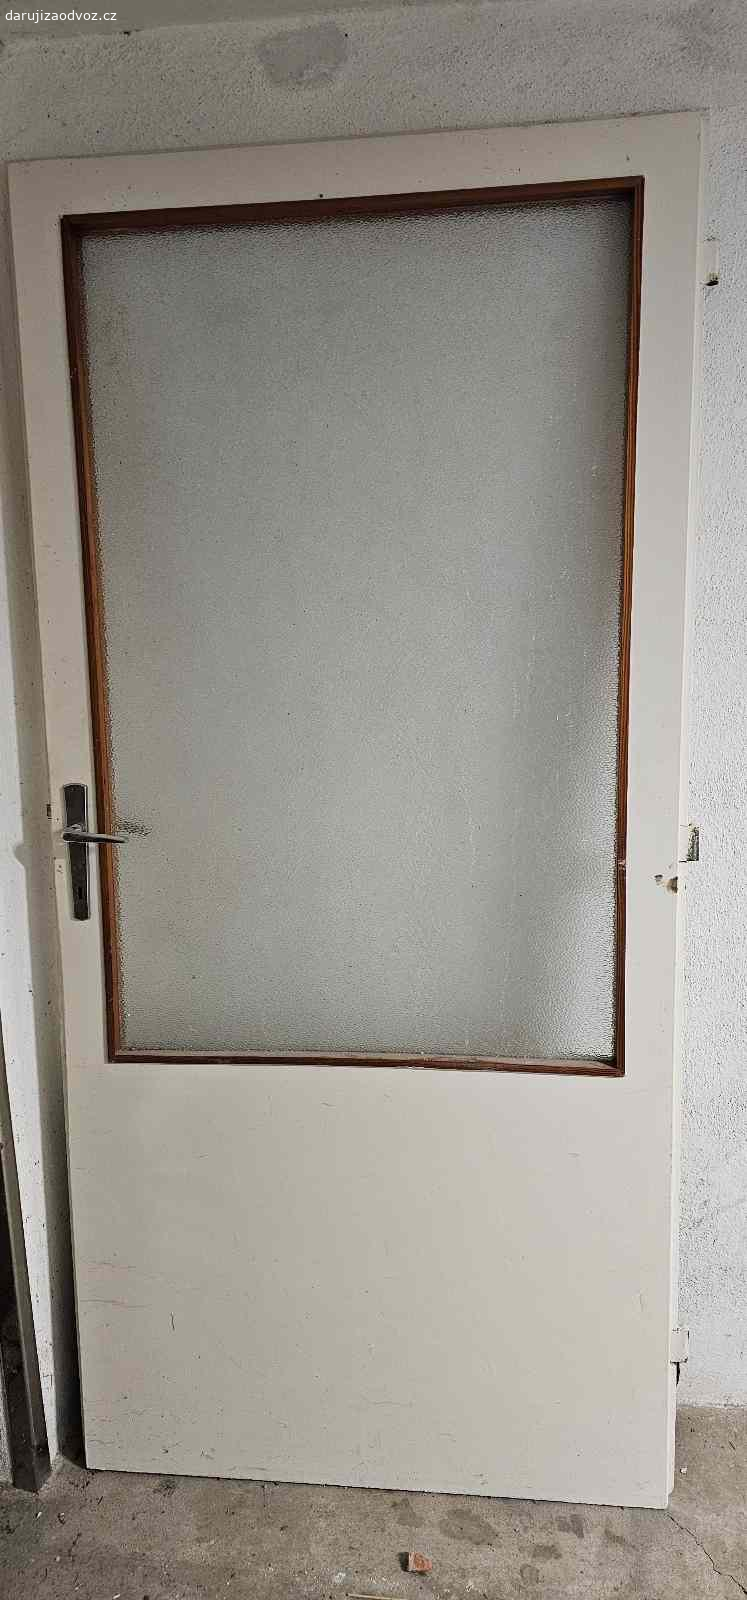 Dveře. Dveře 90 cm levé, 2/3 prosklené, bílá barva, slušný stav